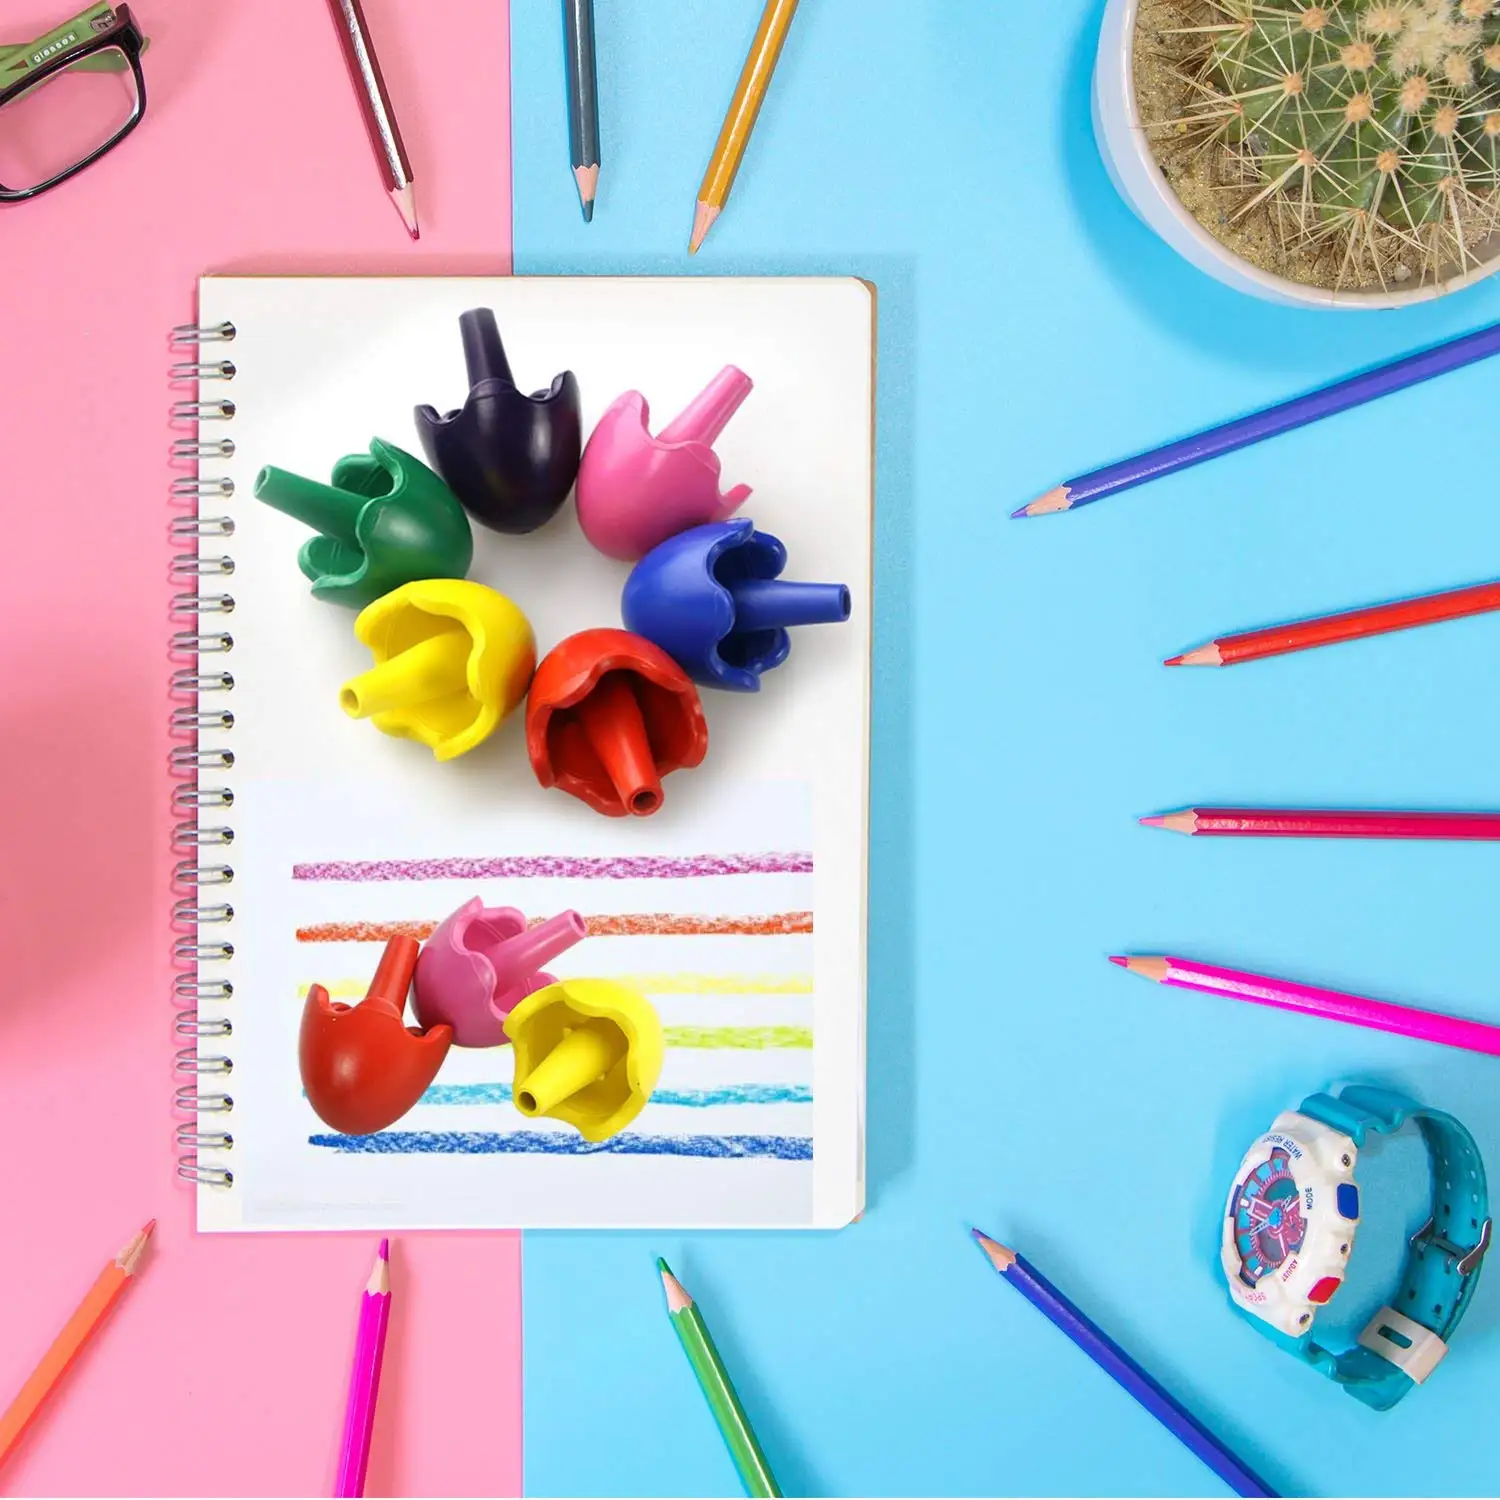 Яйцо для росписи карандаши Pill Shaped карандаши для малышей карандаши для краски Красочные палочки игрушки (9 цветов)